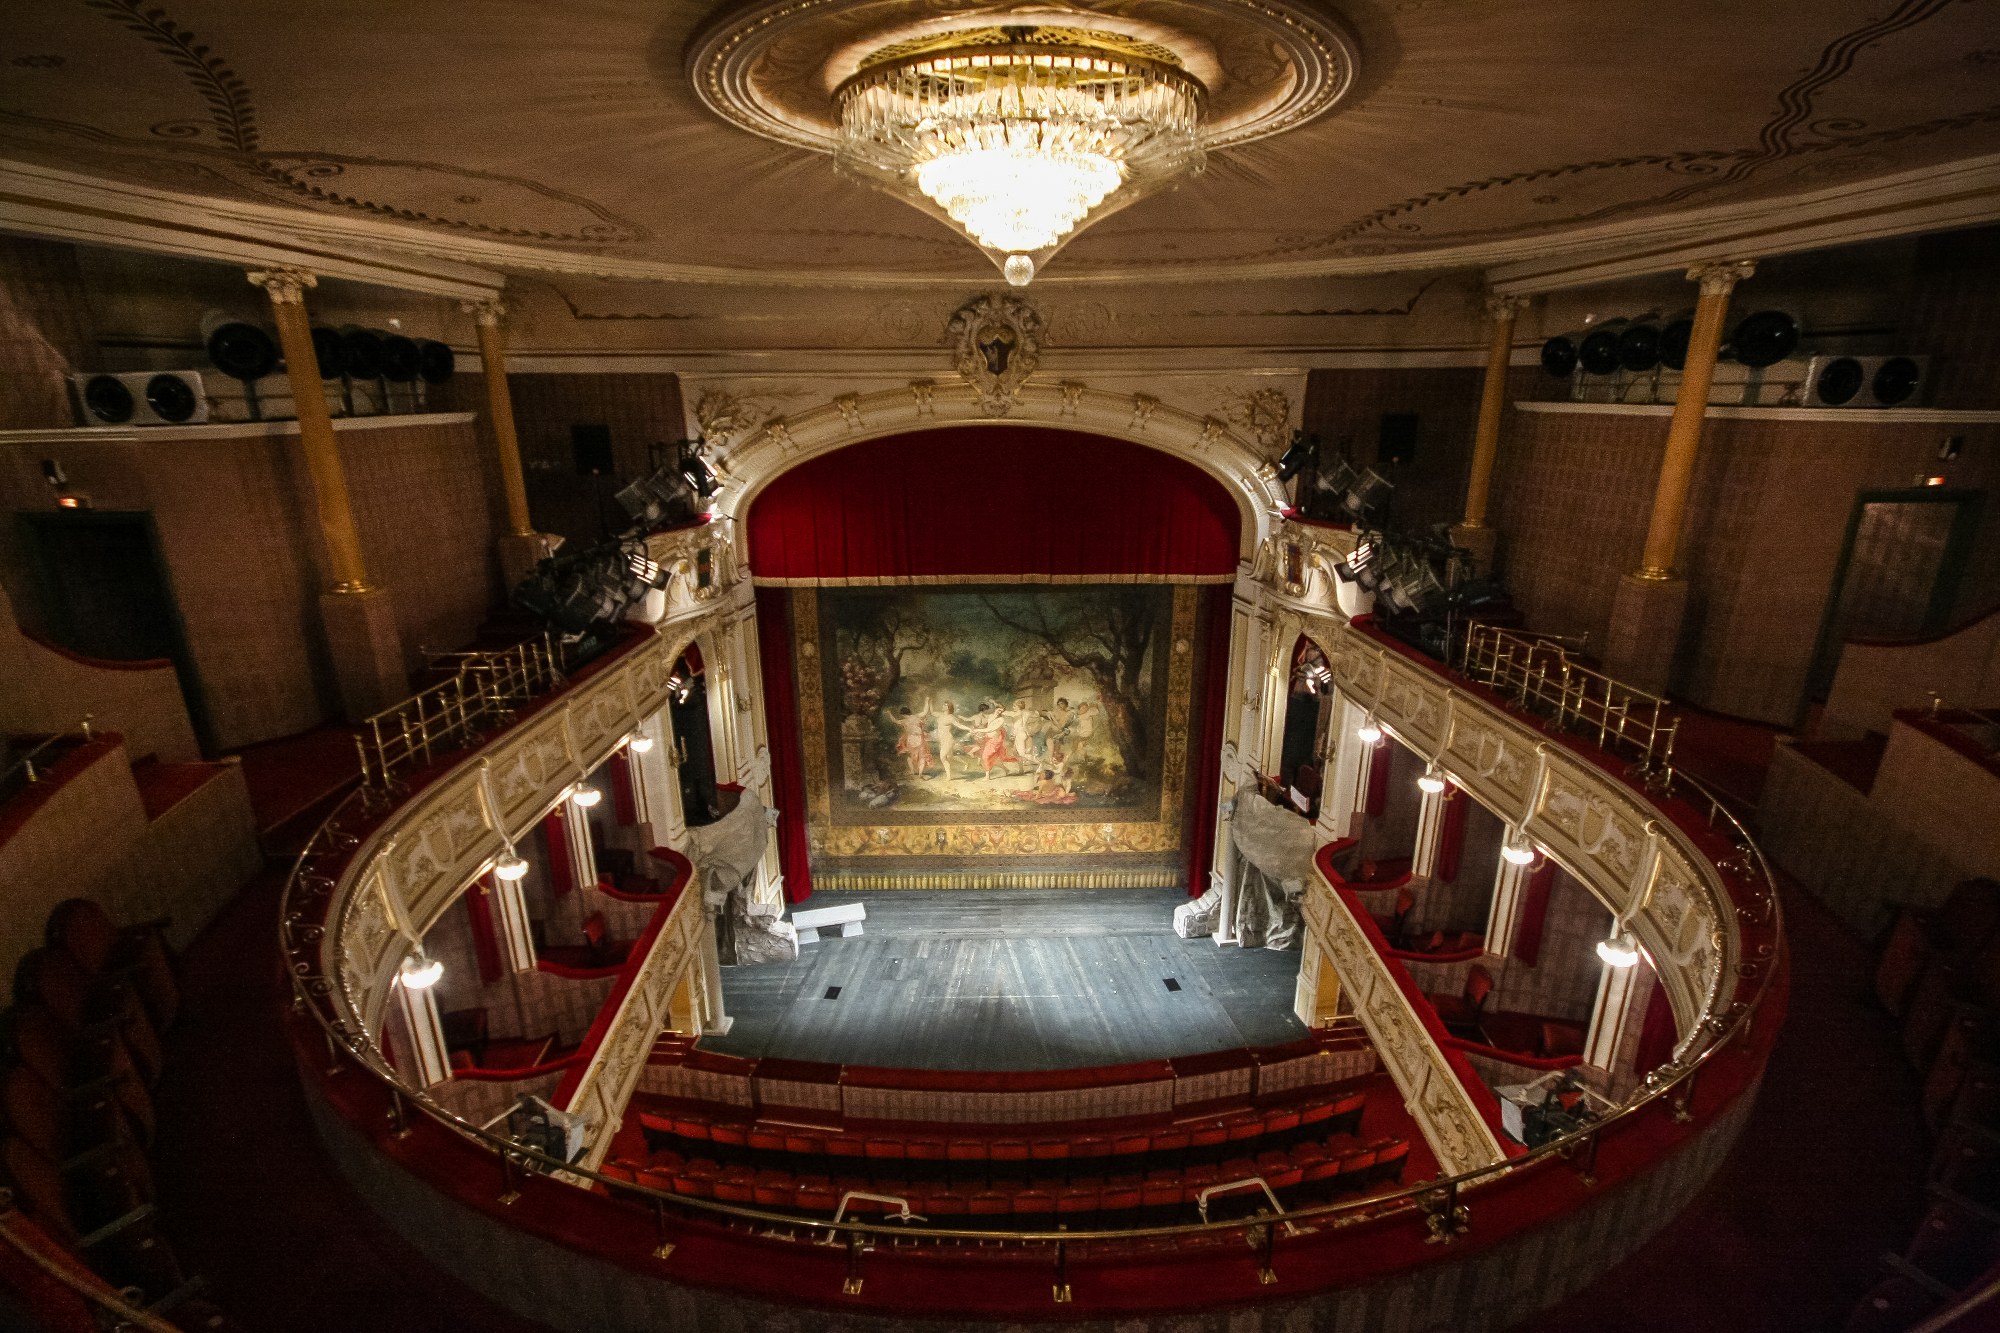  Wnętrze Teatru Polskiego, fot. Paweł Sowa 